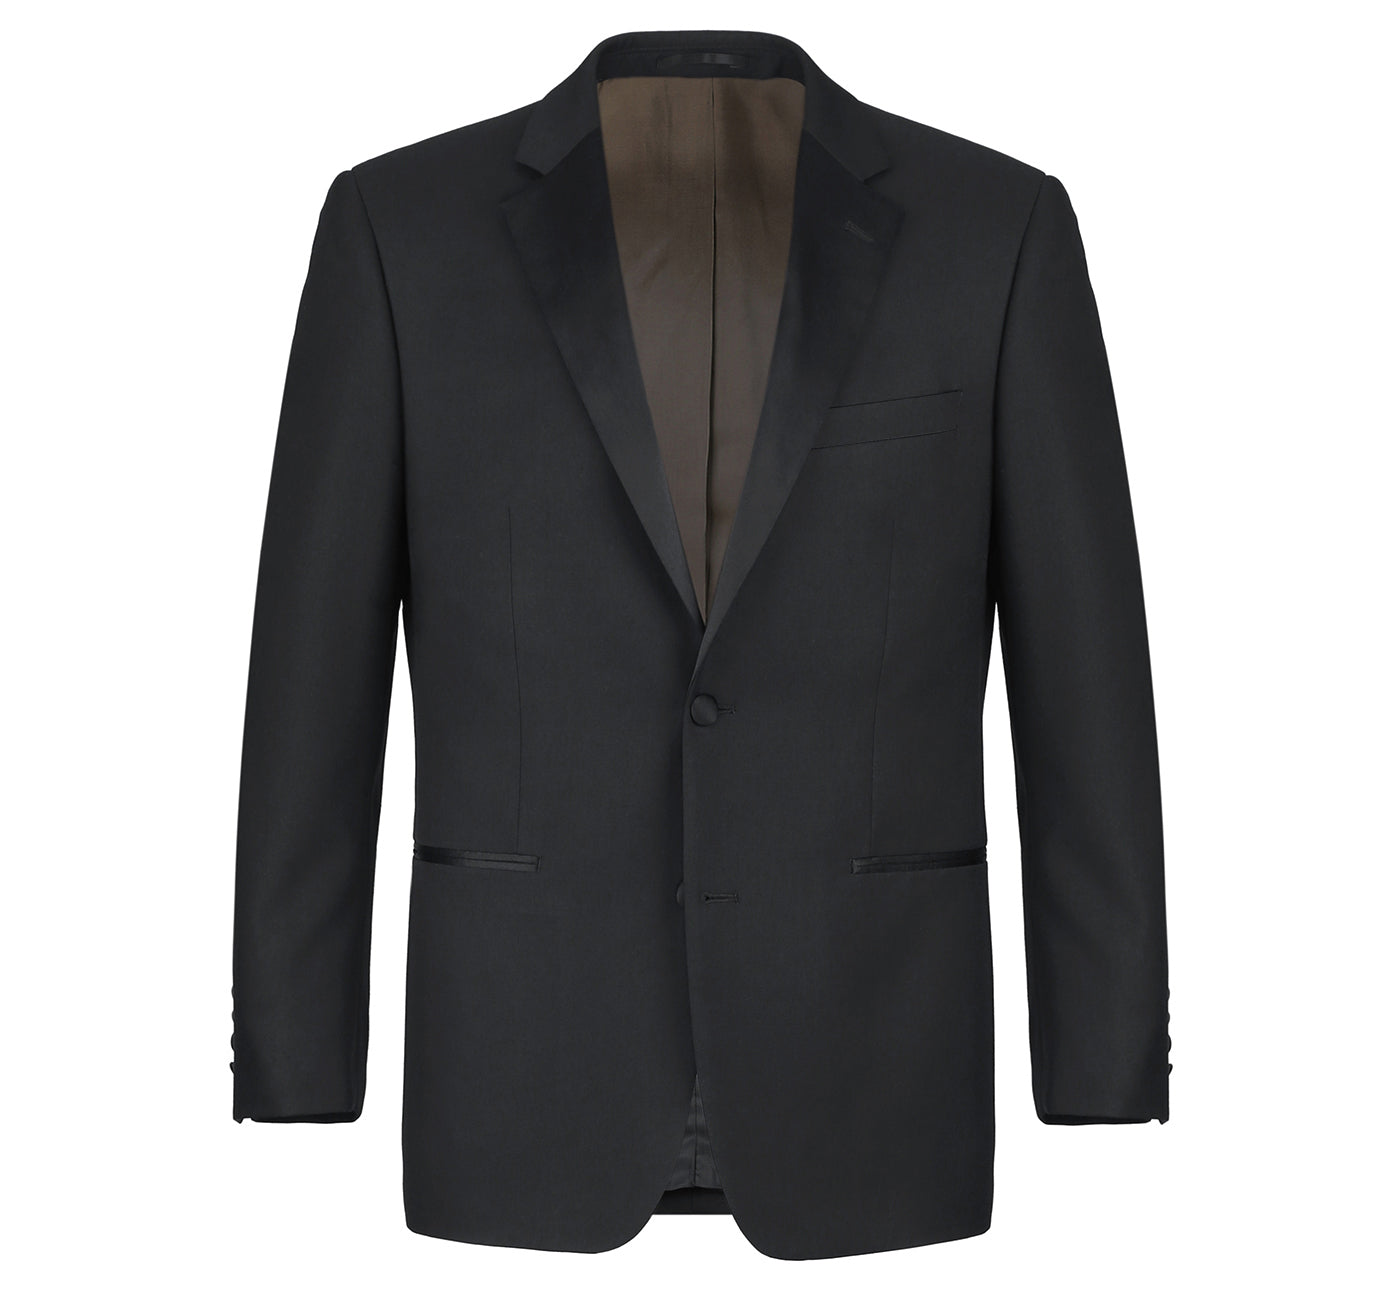 Men’s Satin Notched Lapel 2-Piece 100% Wool Tuxedo Suits 1